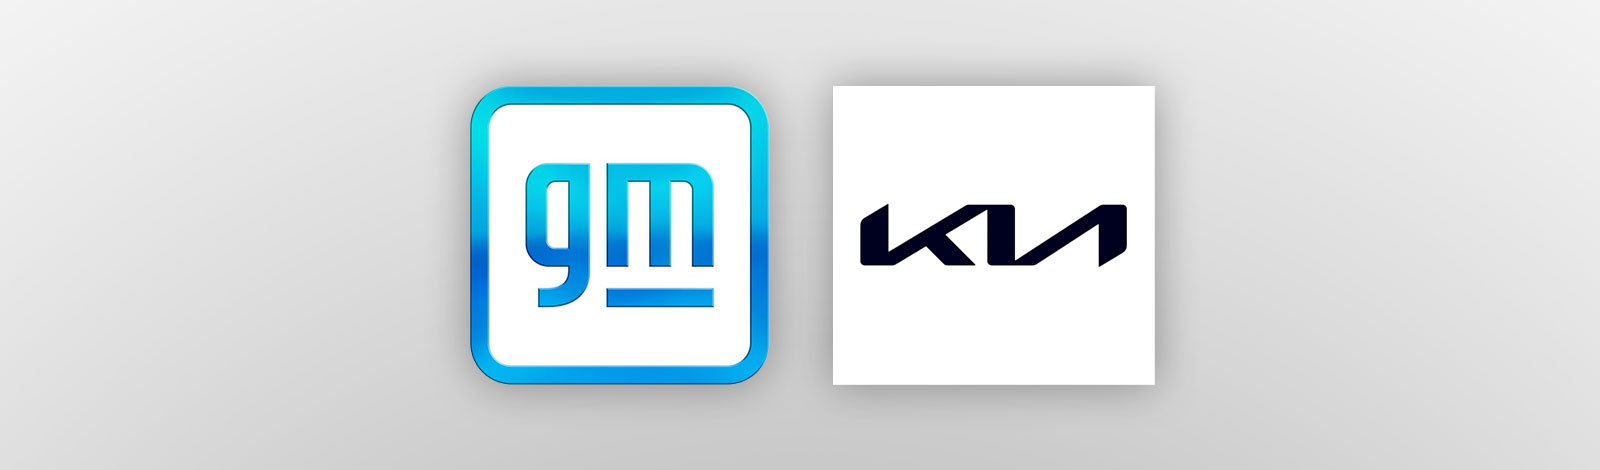 GM, Kia show new logos